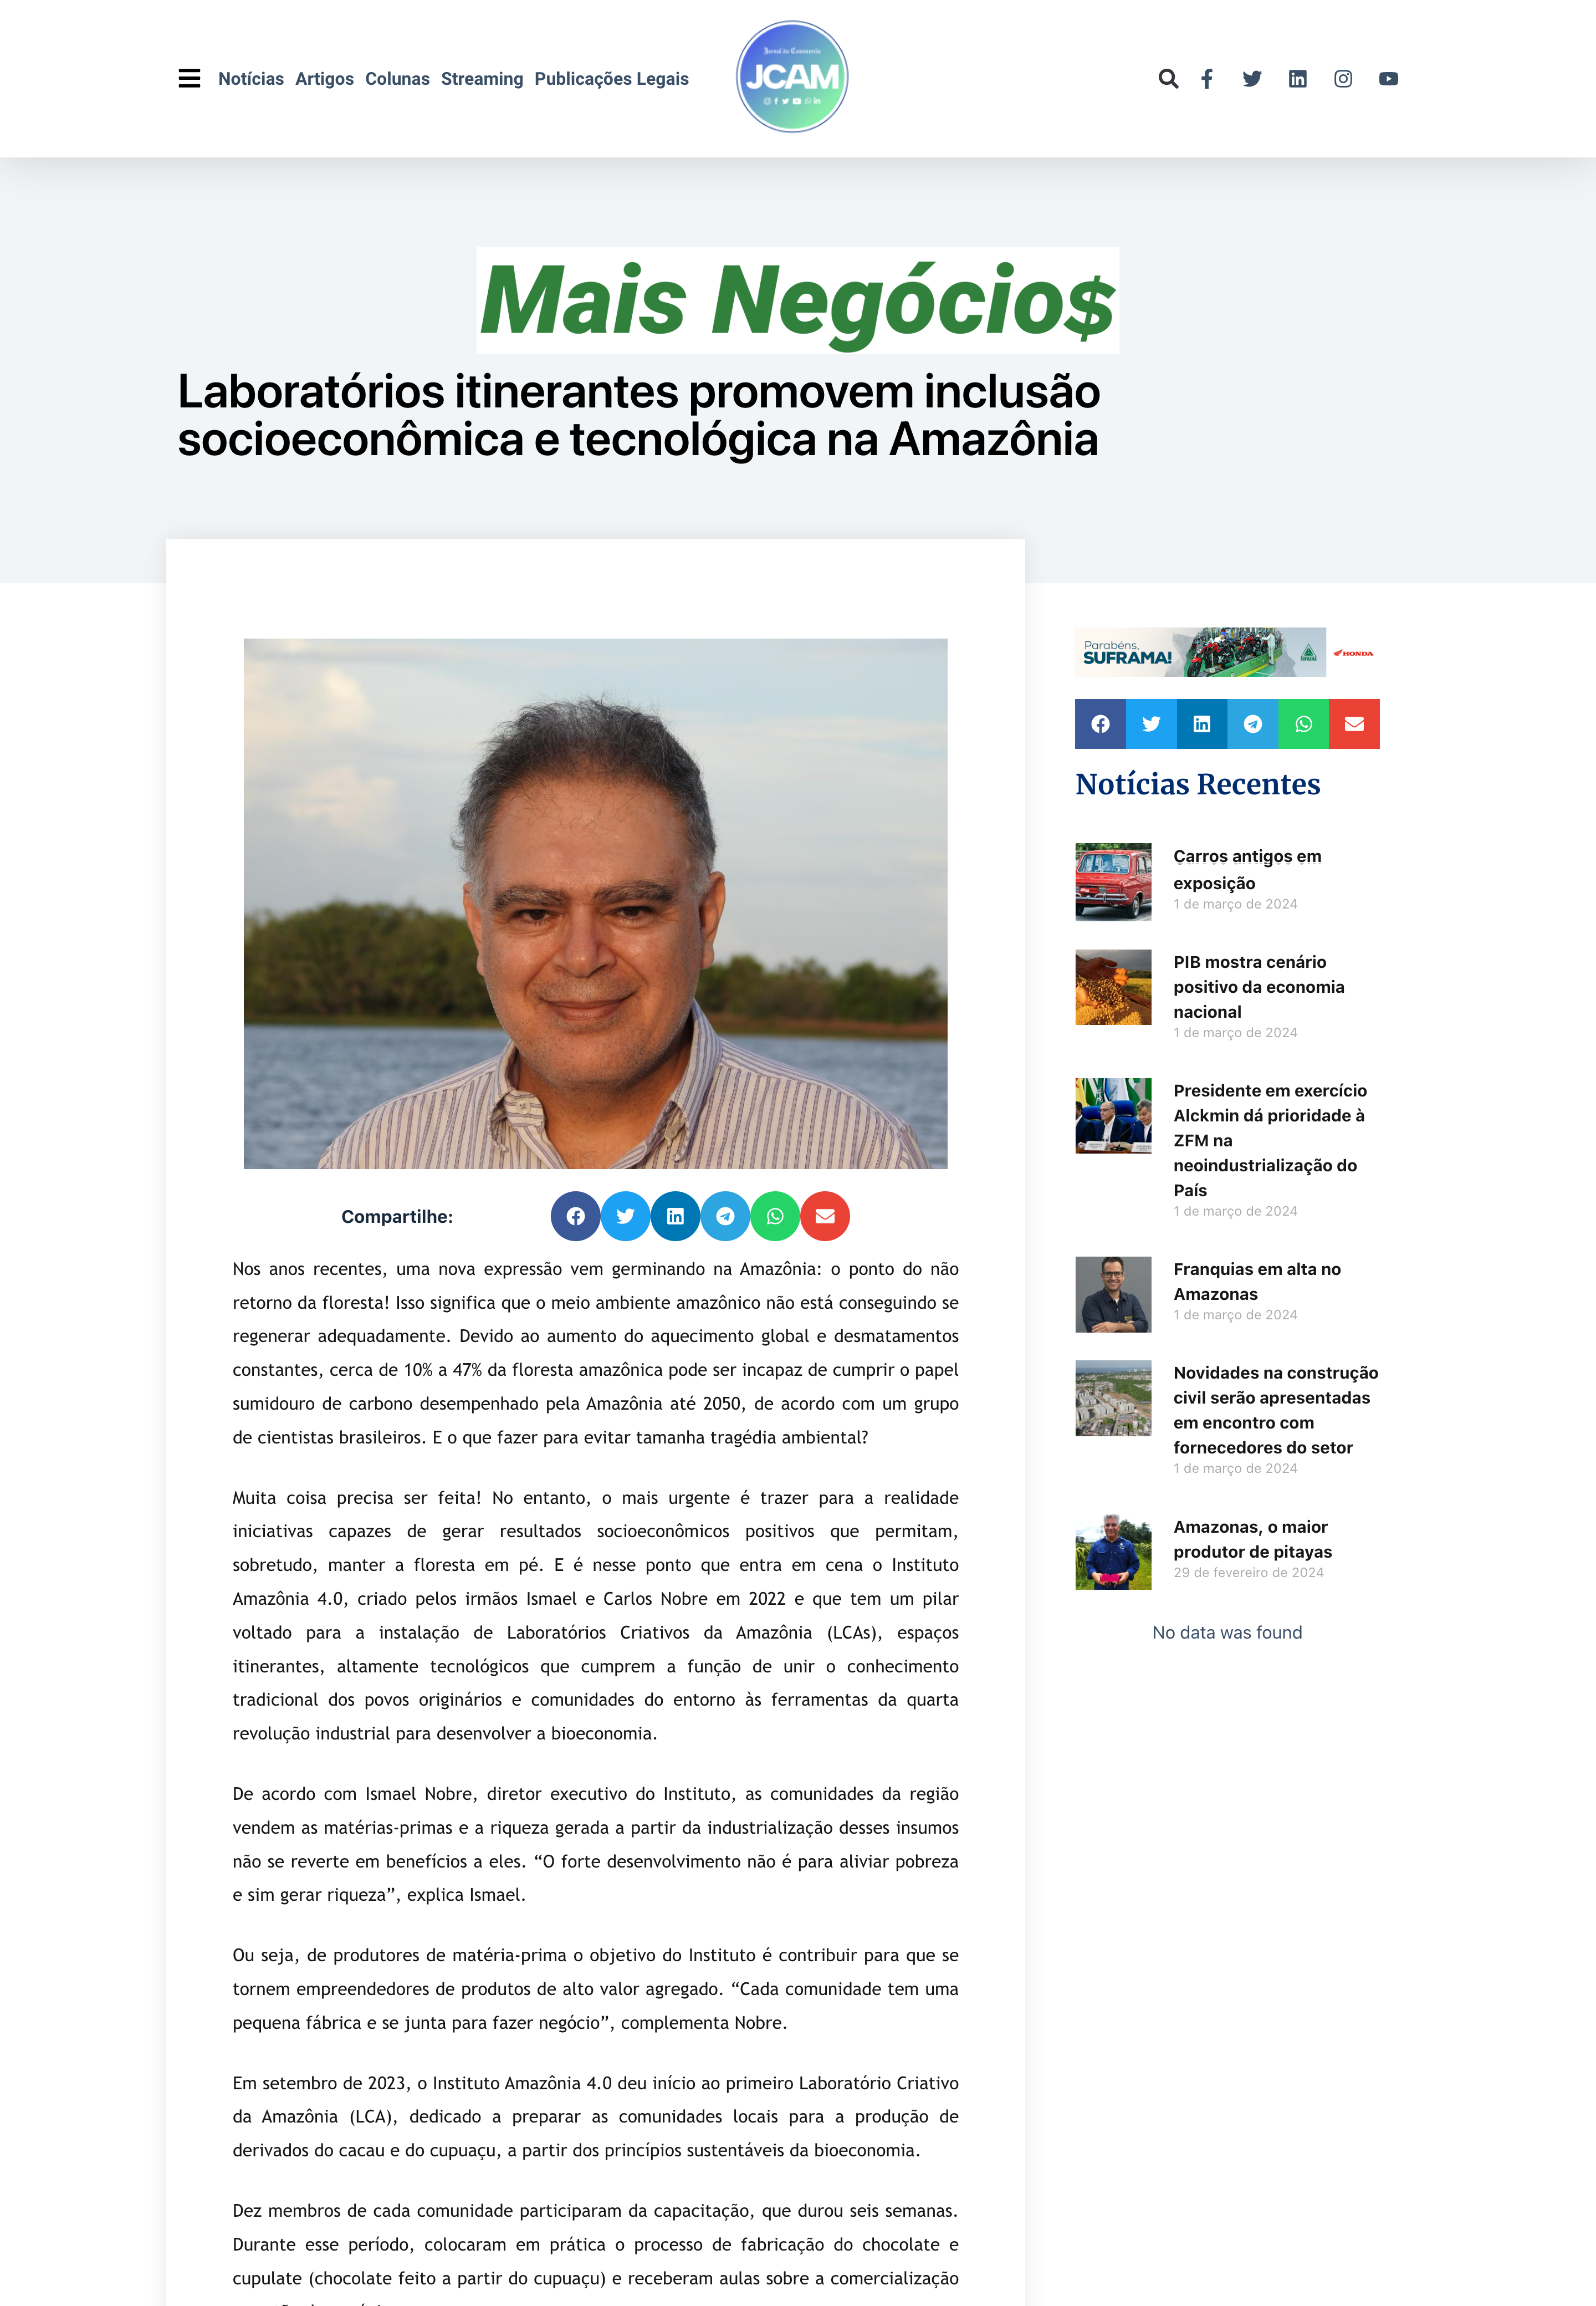 Instituto Amazônia 4.0 é destaque na mídia manauara